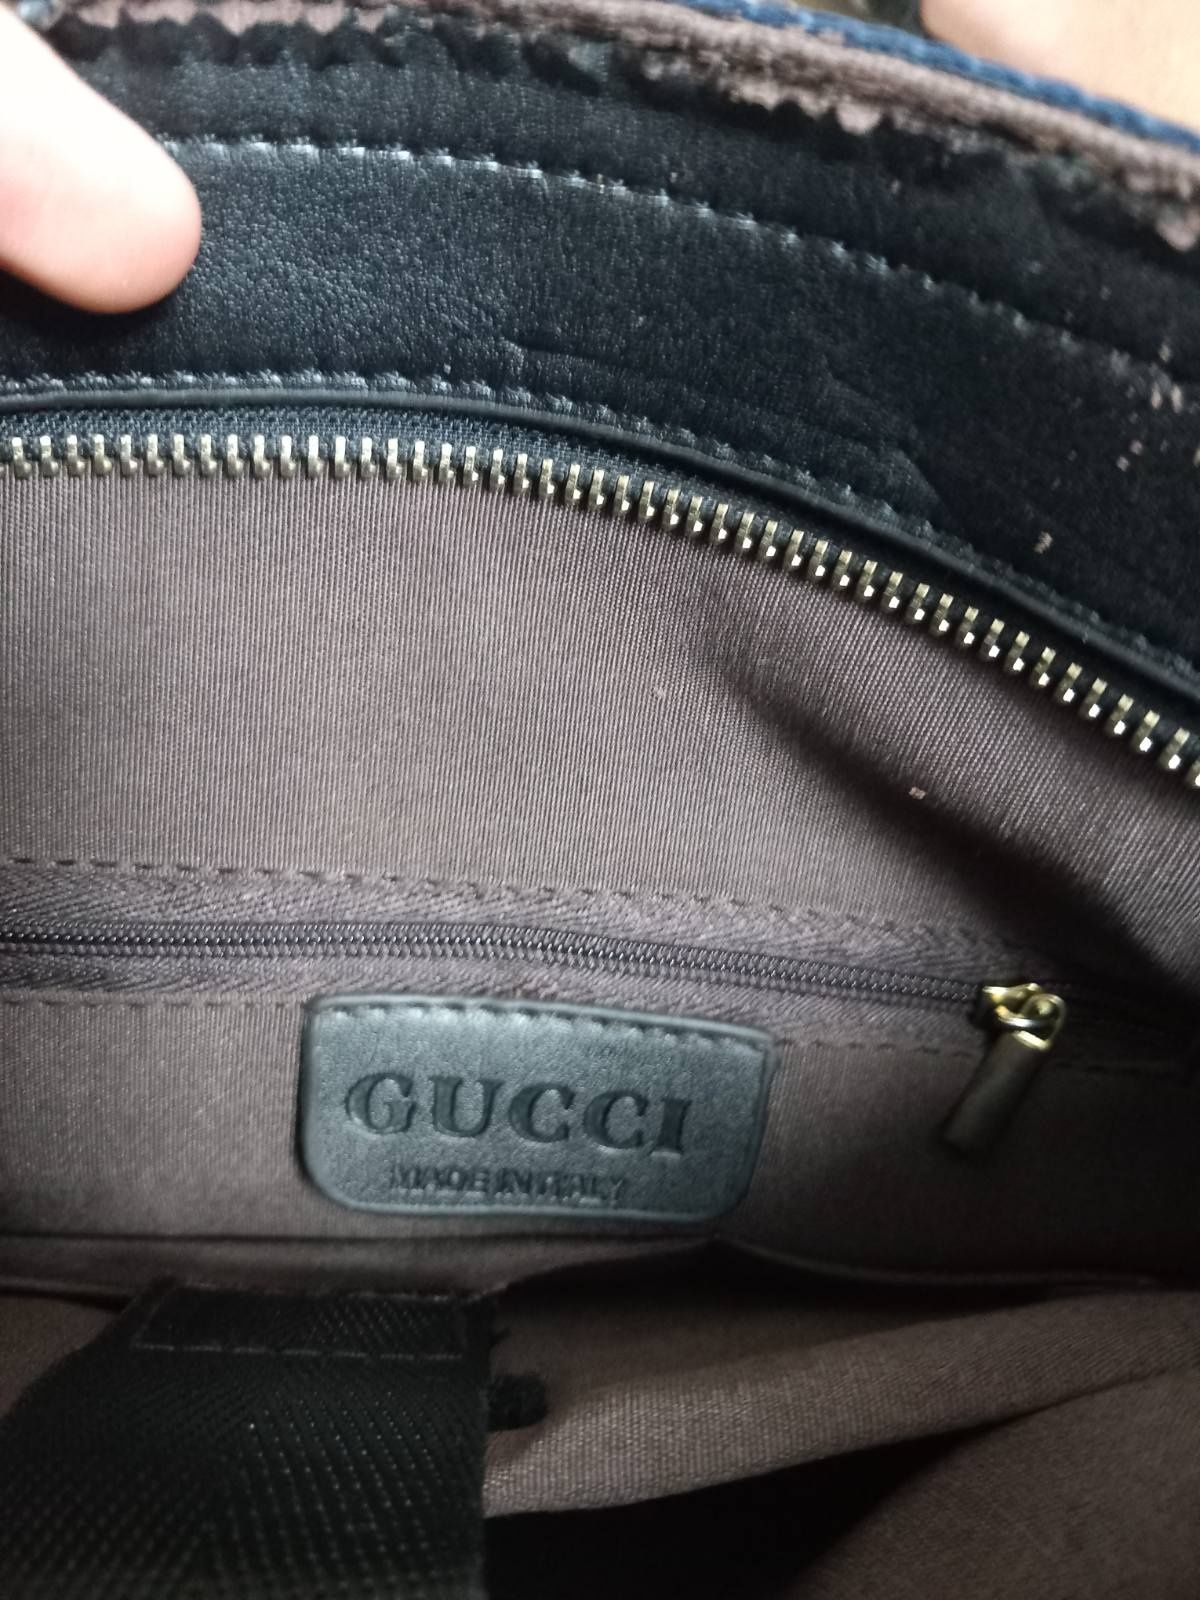 Gucci man bag...